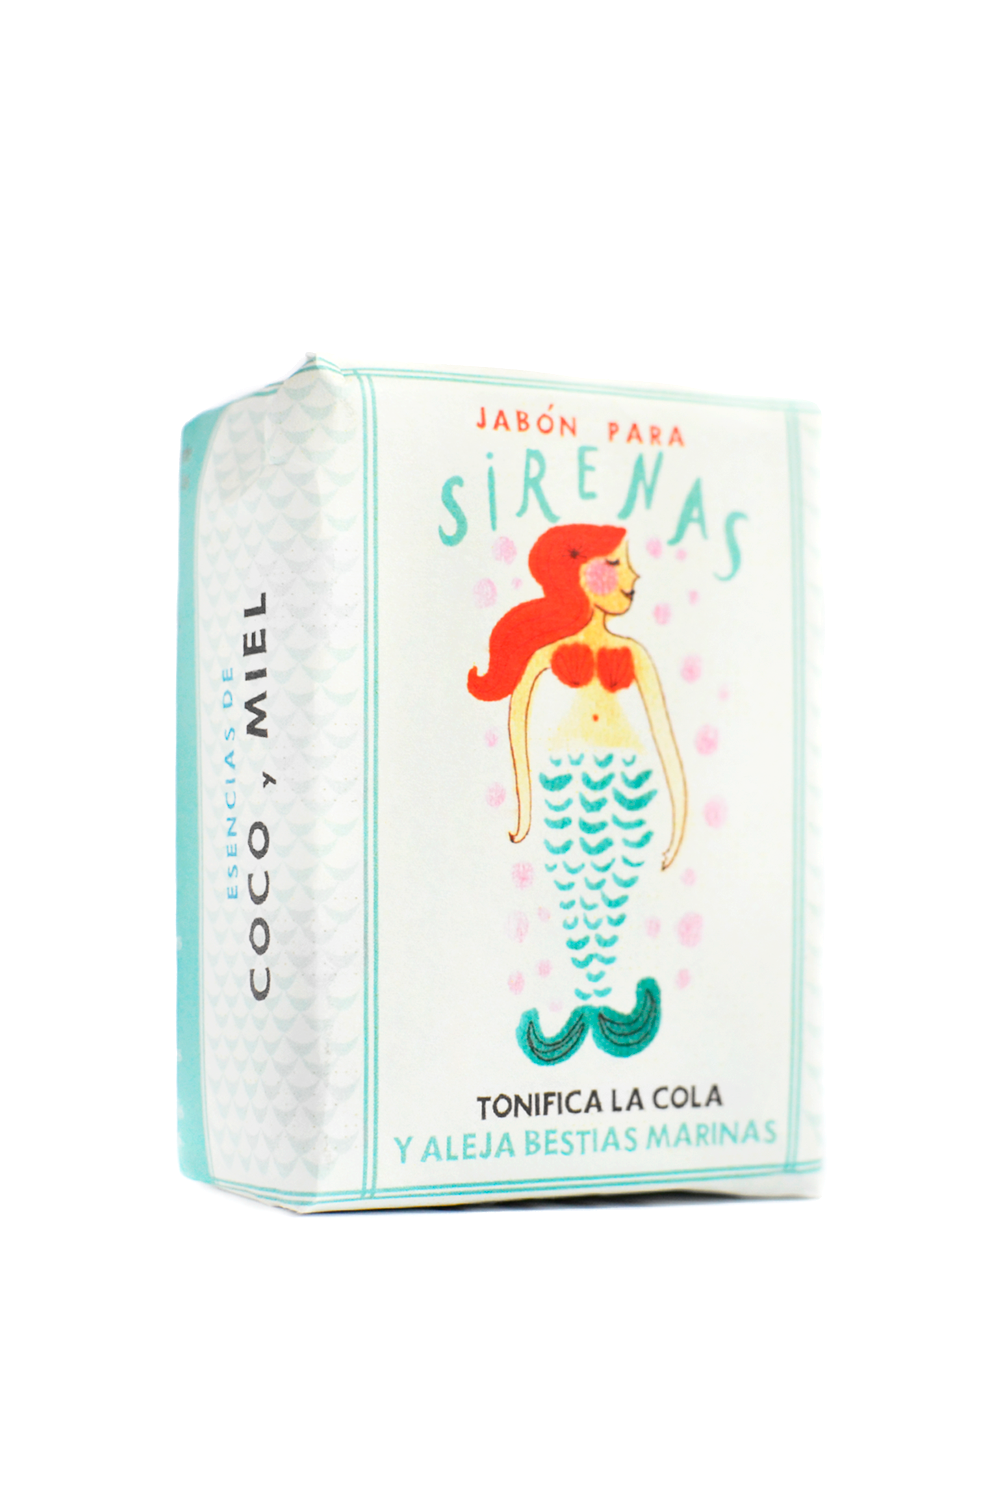 Mermaid Soap (Coco Miel)